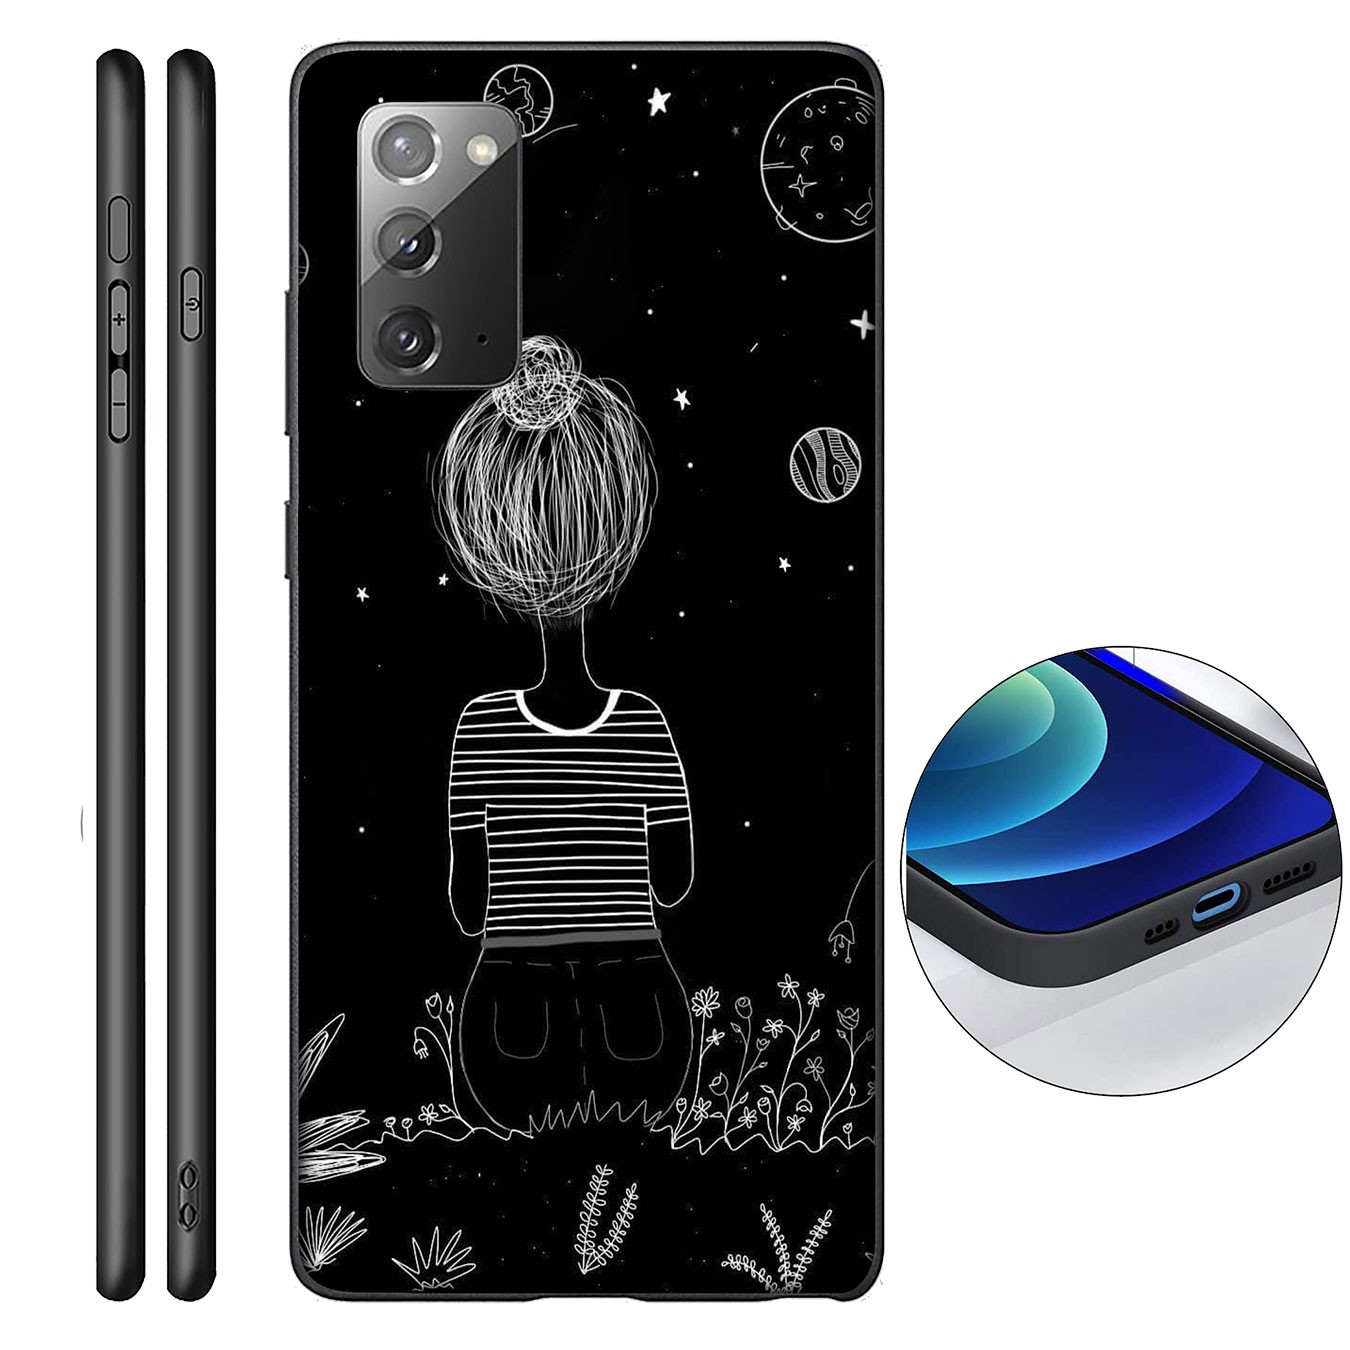 Ốp điện thoại silicon mềm hình hành tinh/mặt trăng cho Samsung Galaxy A9 A8 A7 A6 Plus J8 2018+ A21S A70 M20 A6+ A8+ 6+